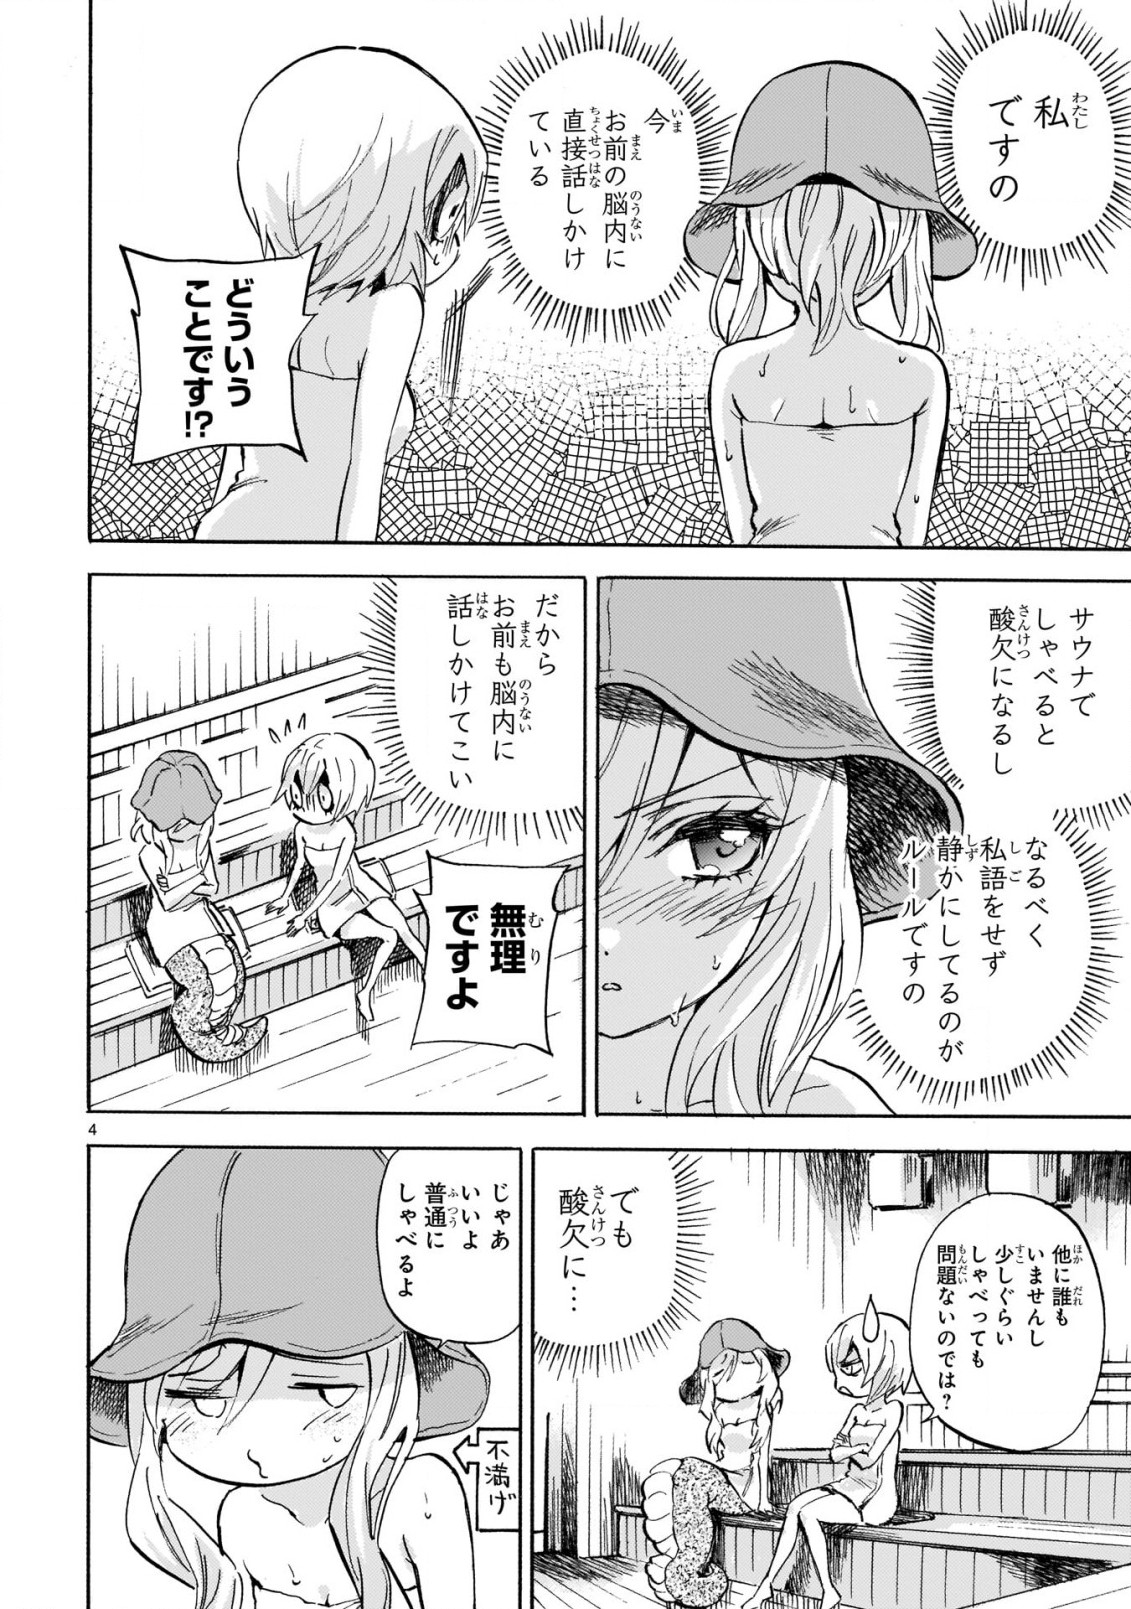 Jashin-chan Dropkick - Chapter 222 - Page 4